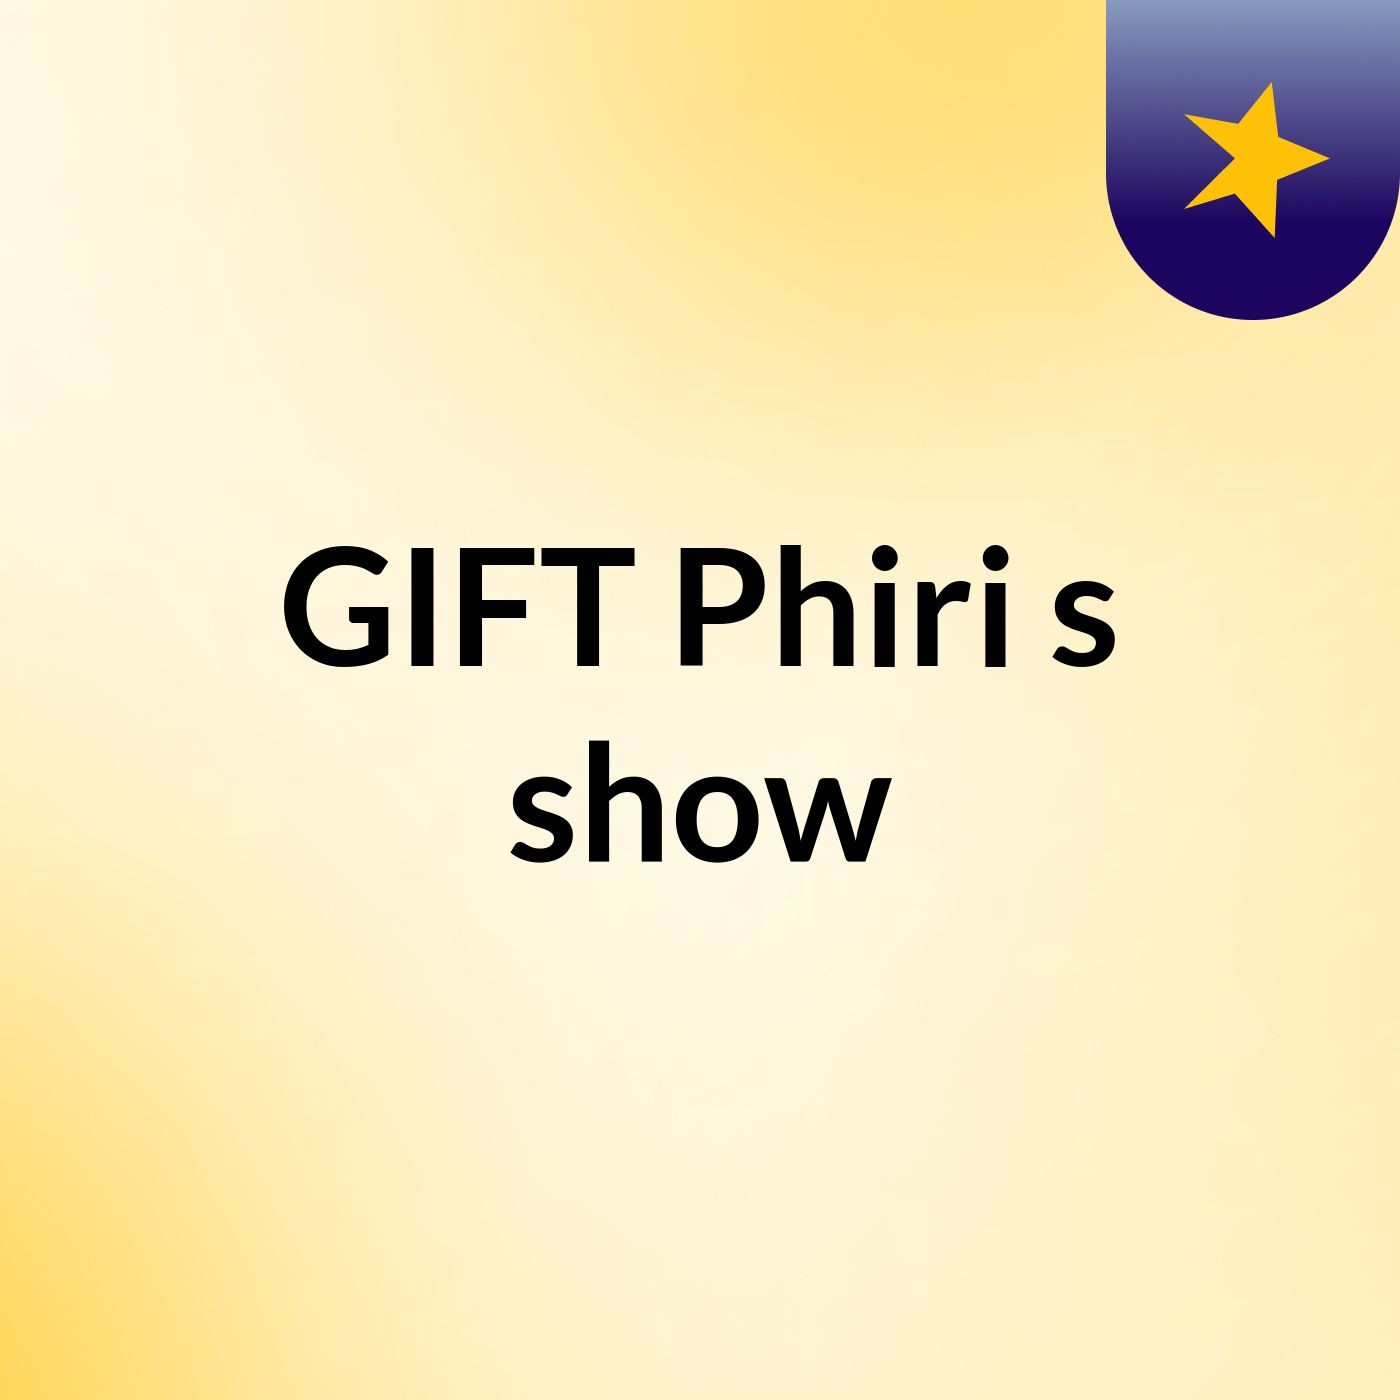 GIFT Phiri's show